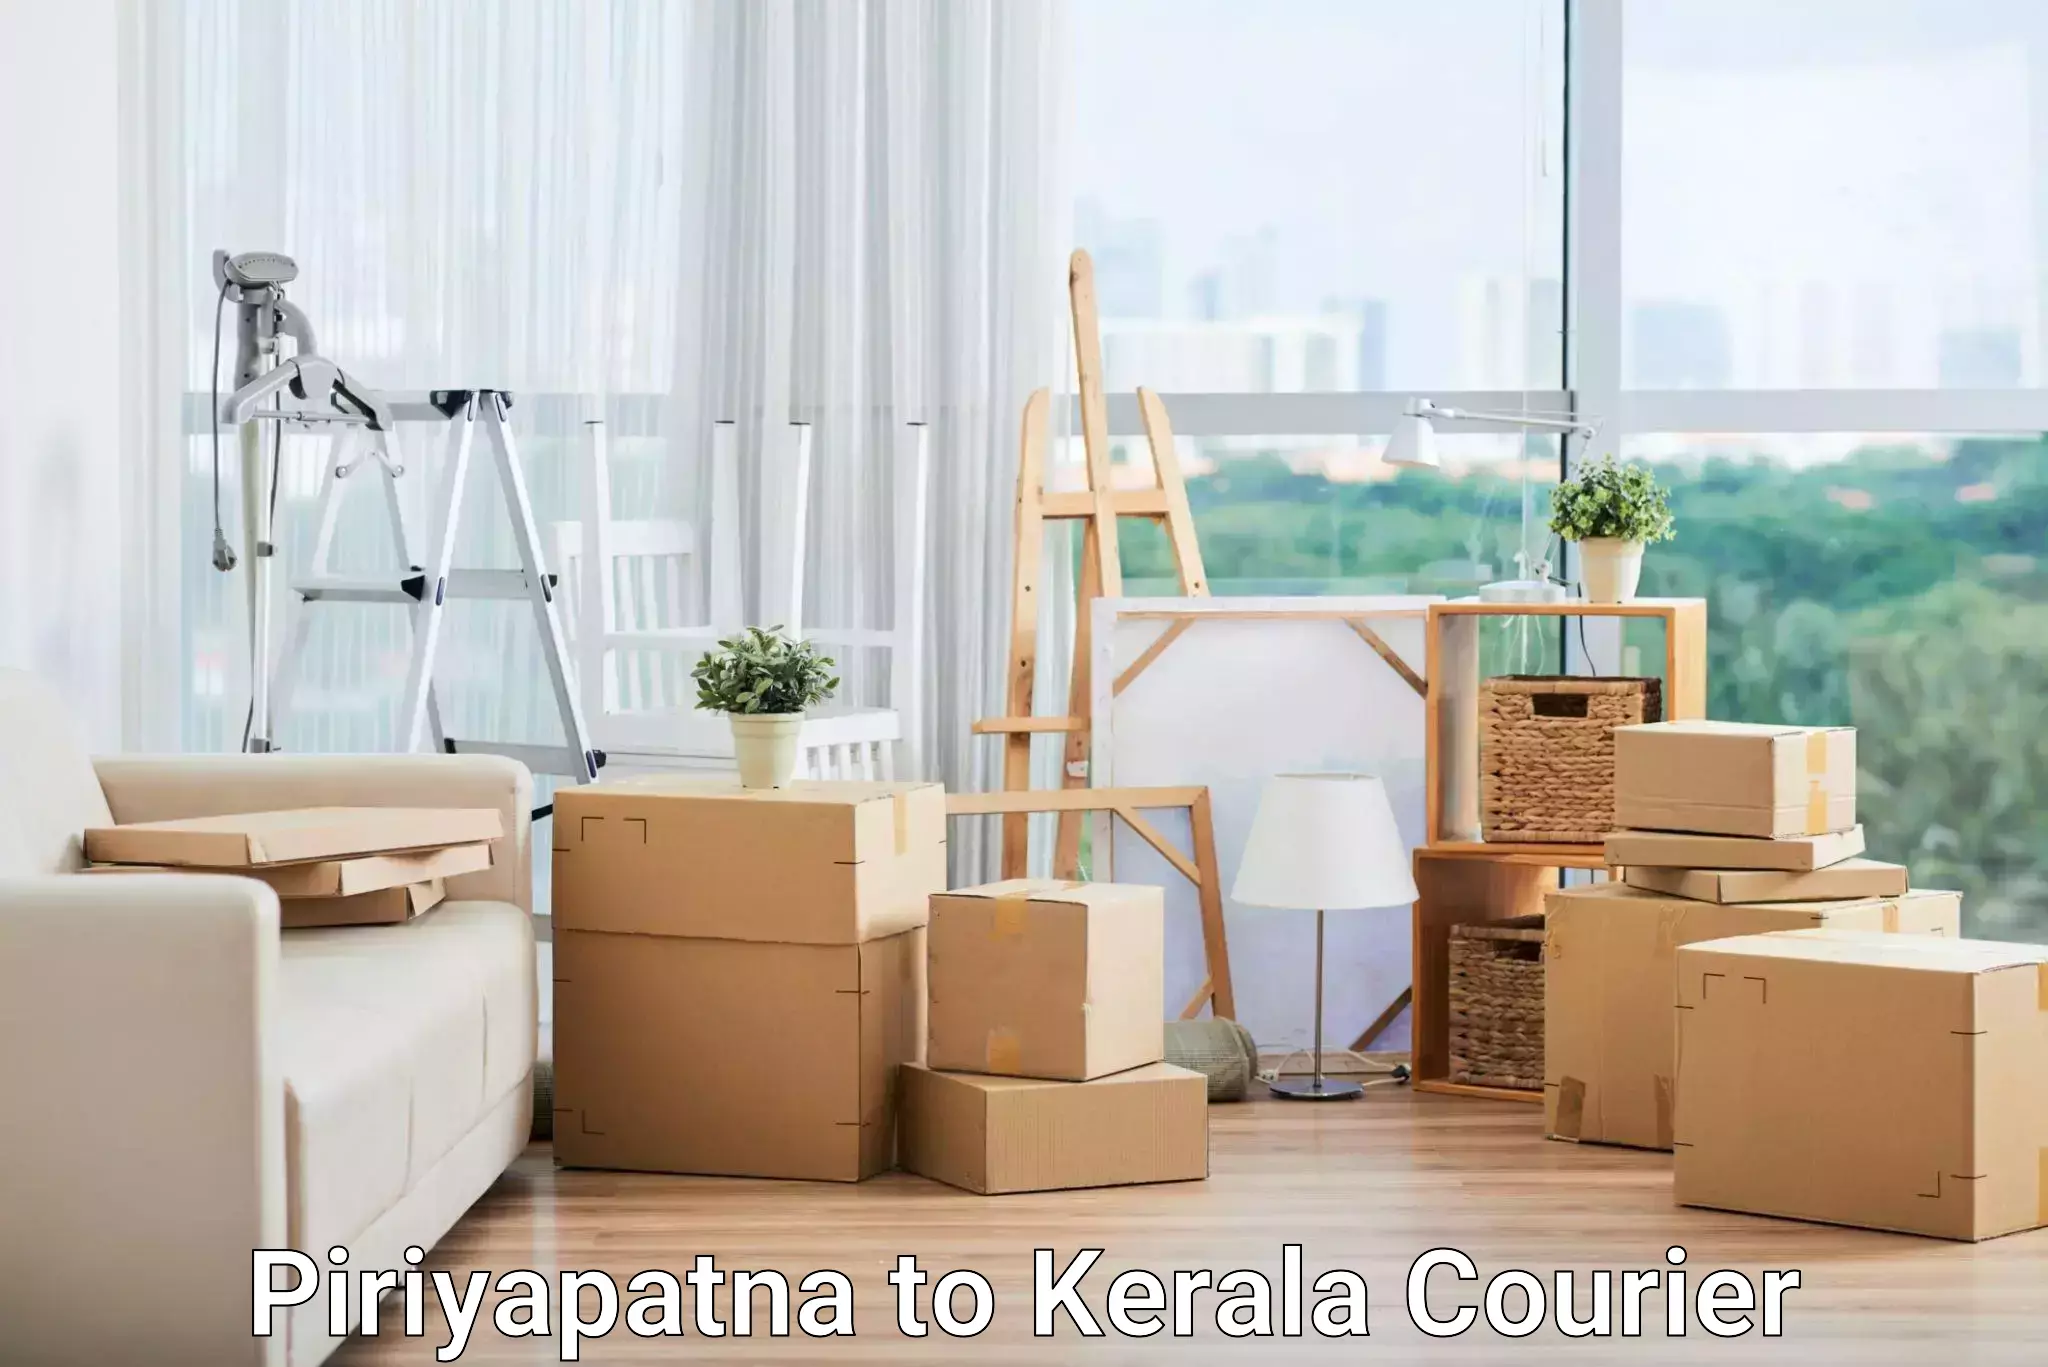 Nationwide shipping capabilities Piriyapatna to Cochin Port Kochi